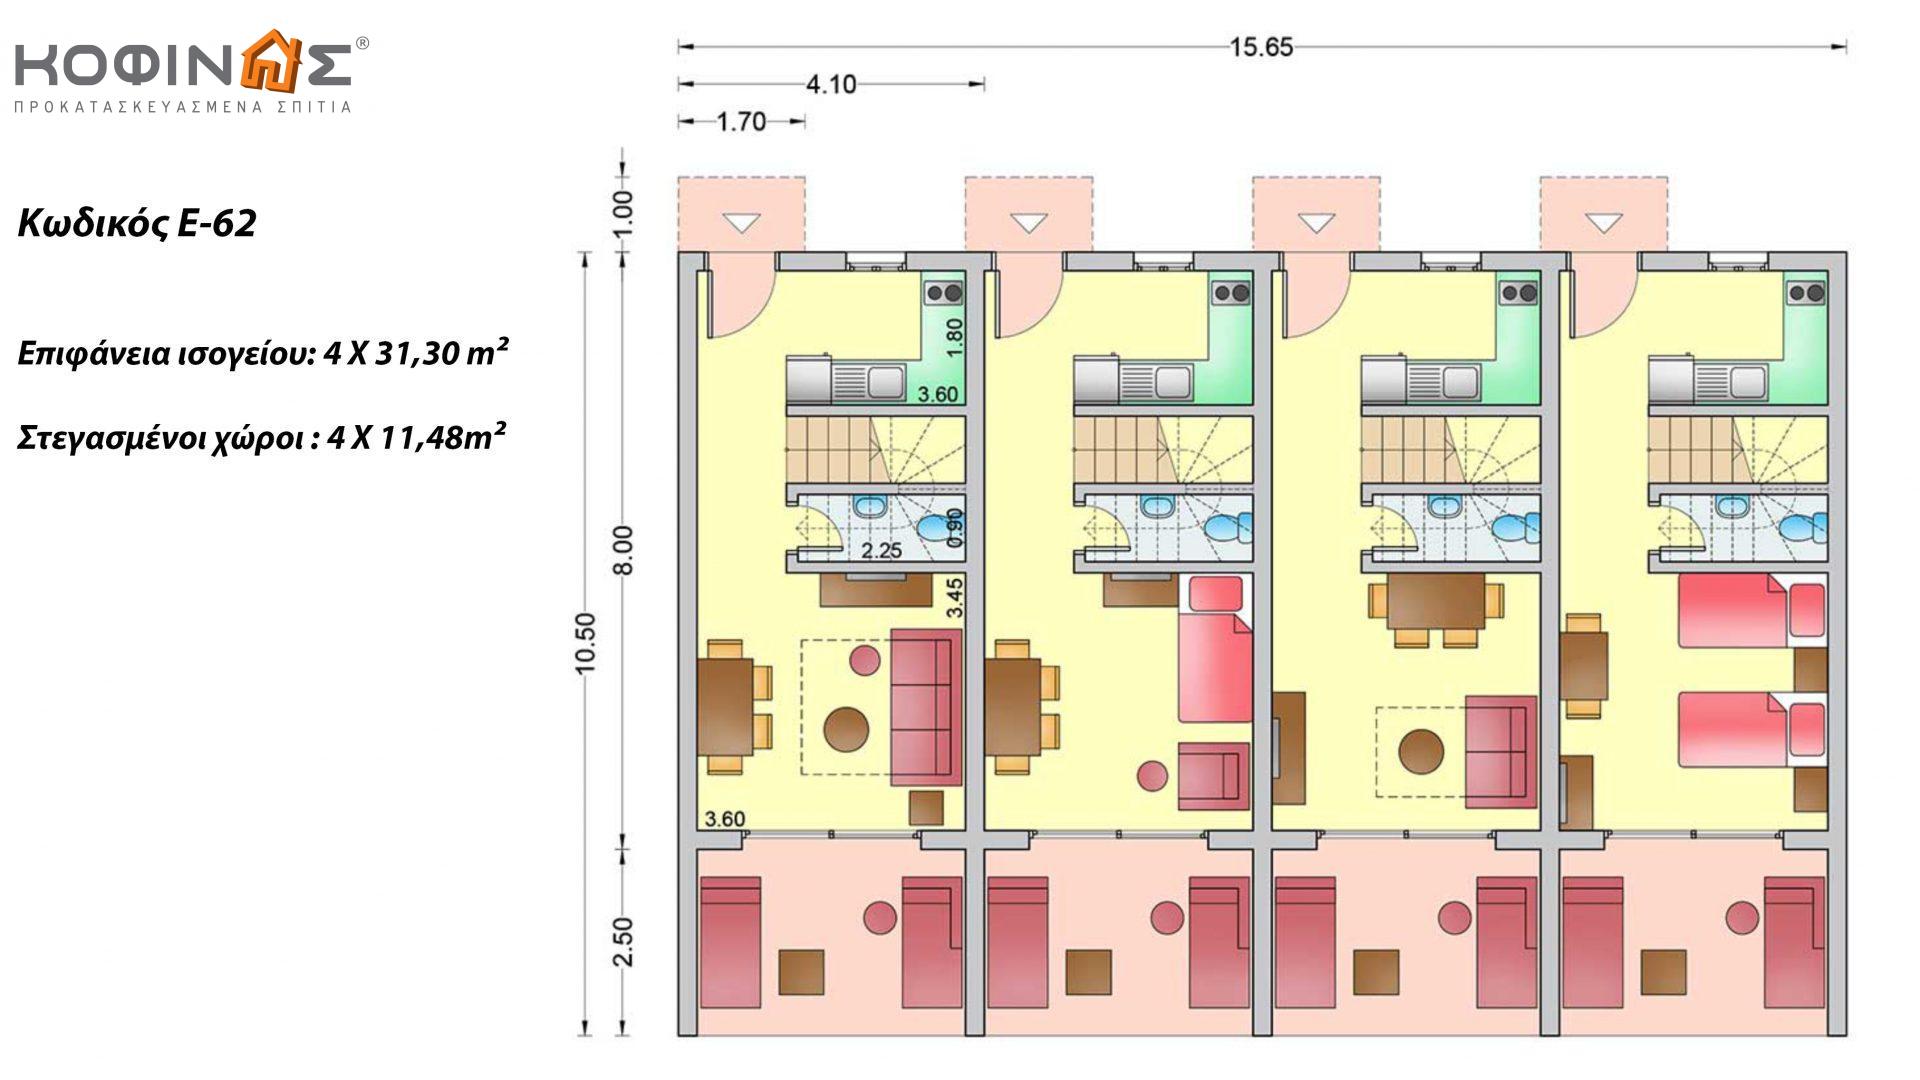 Συγκρότημα Κατοικιών E-62, συνολικής επιφάνειας 4 x 62,60 = 250,40 τ.μ., συνολική επιφάνεια στεγασμένων χώρων 85.04 τ.μ.